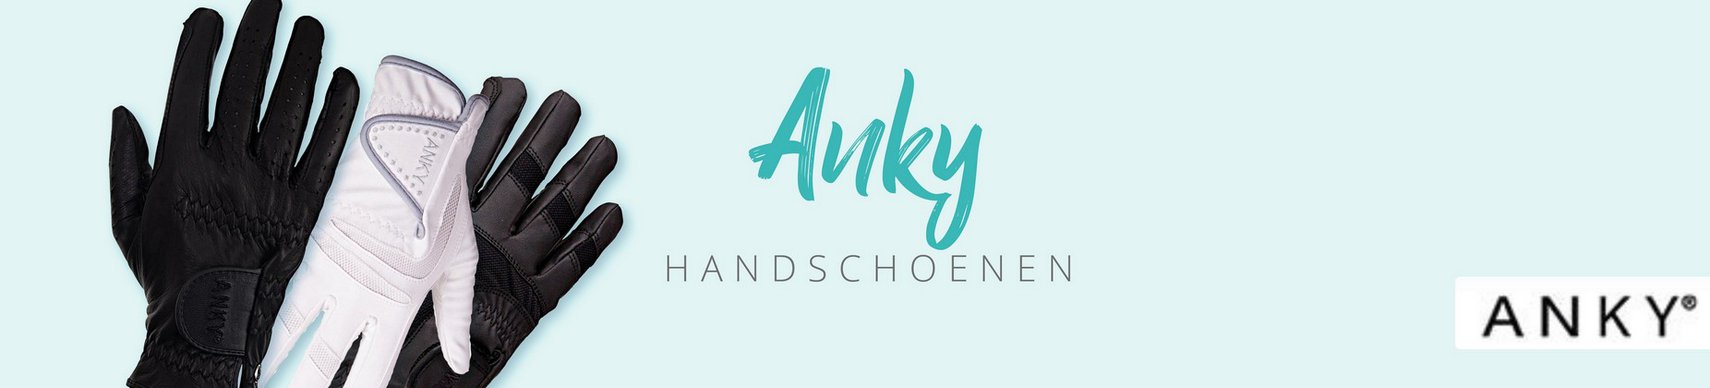 Merk_Anky_Handschoenen.jpg